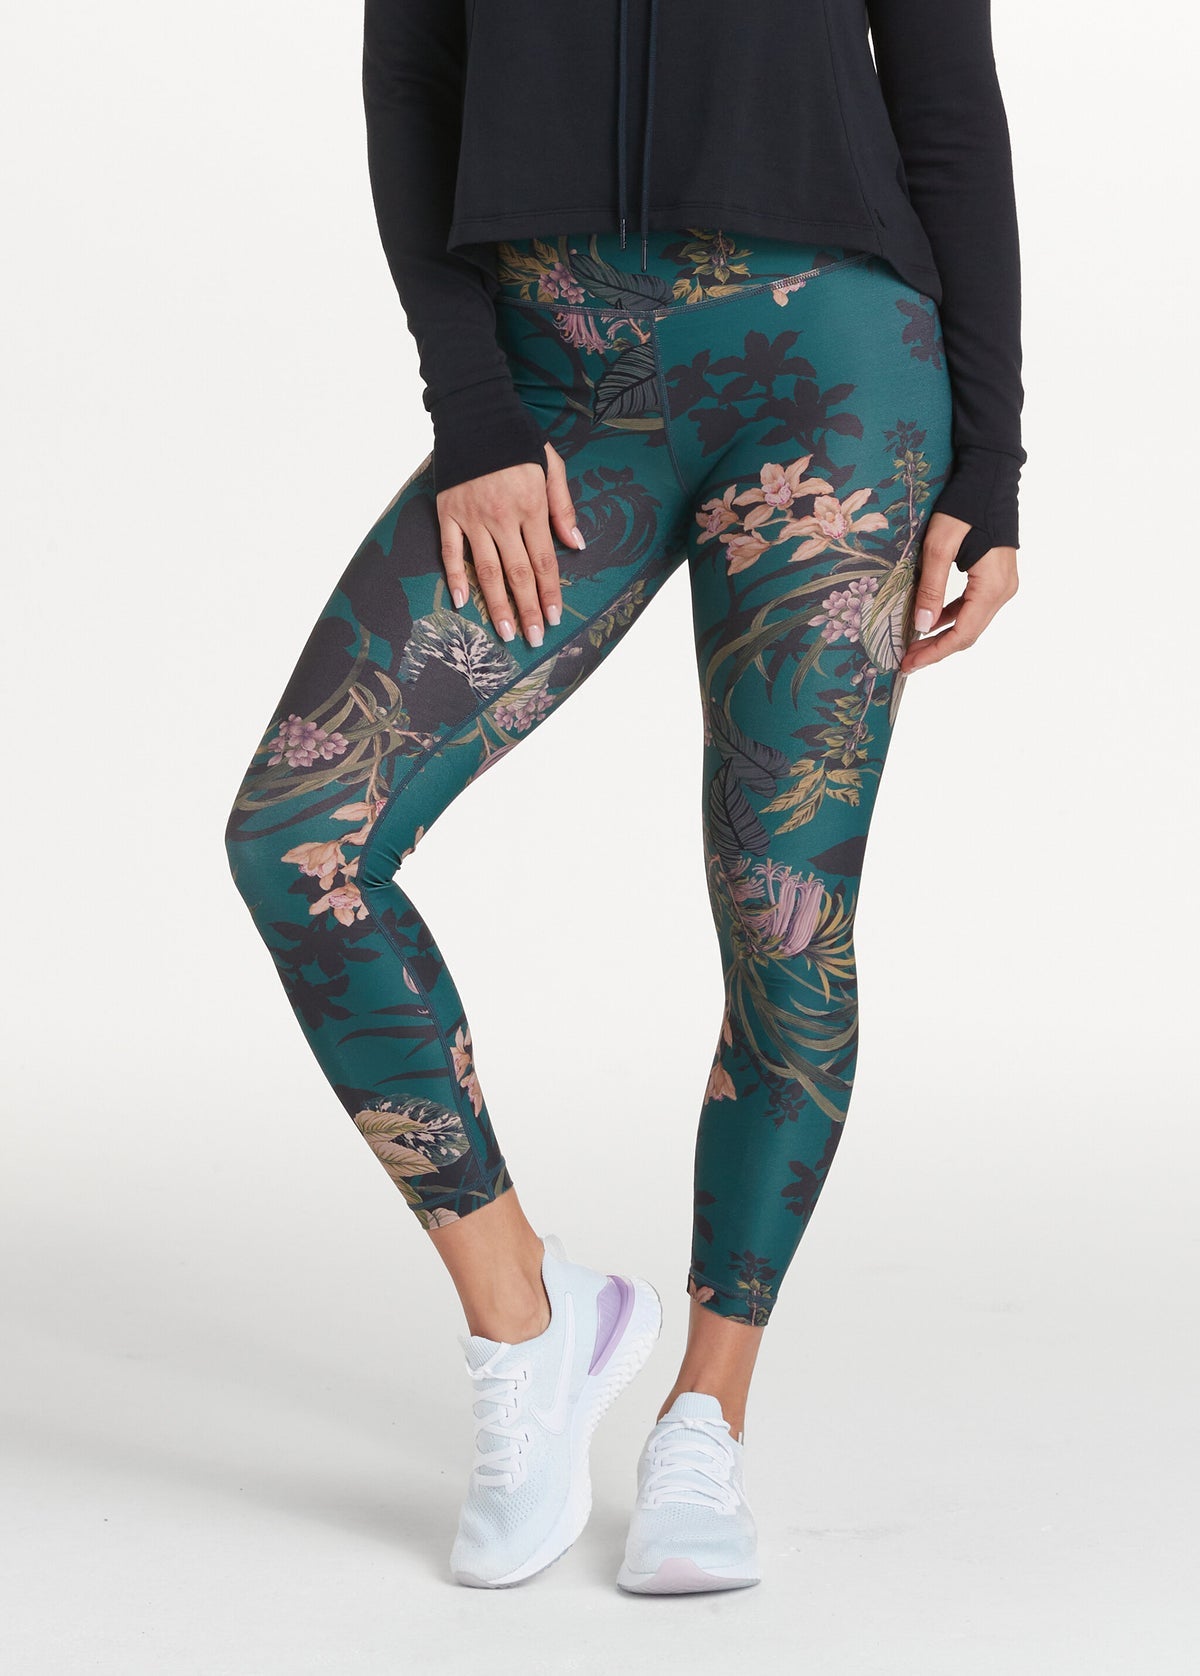 ShopOlica Women's Skinny Fit Nylon Blend Leggings  (Navy-Blue-Full-Foot-Small_Navy Blue_S) : : Fashion